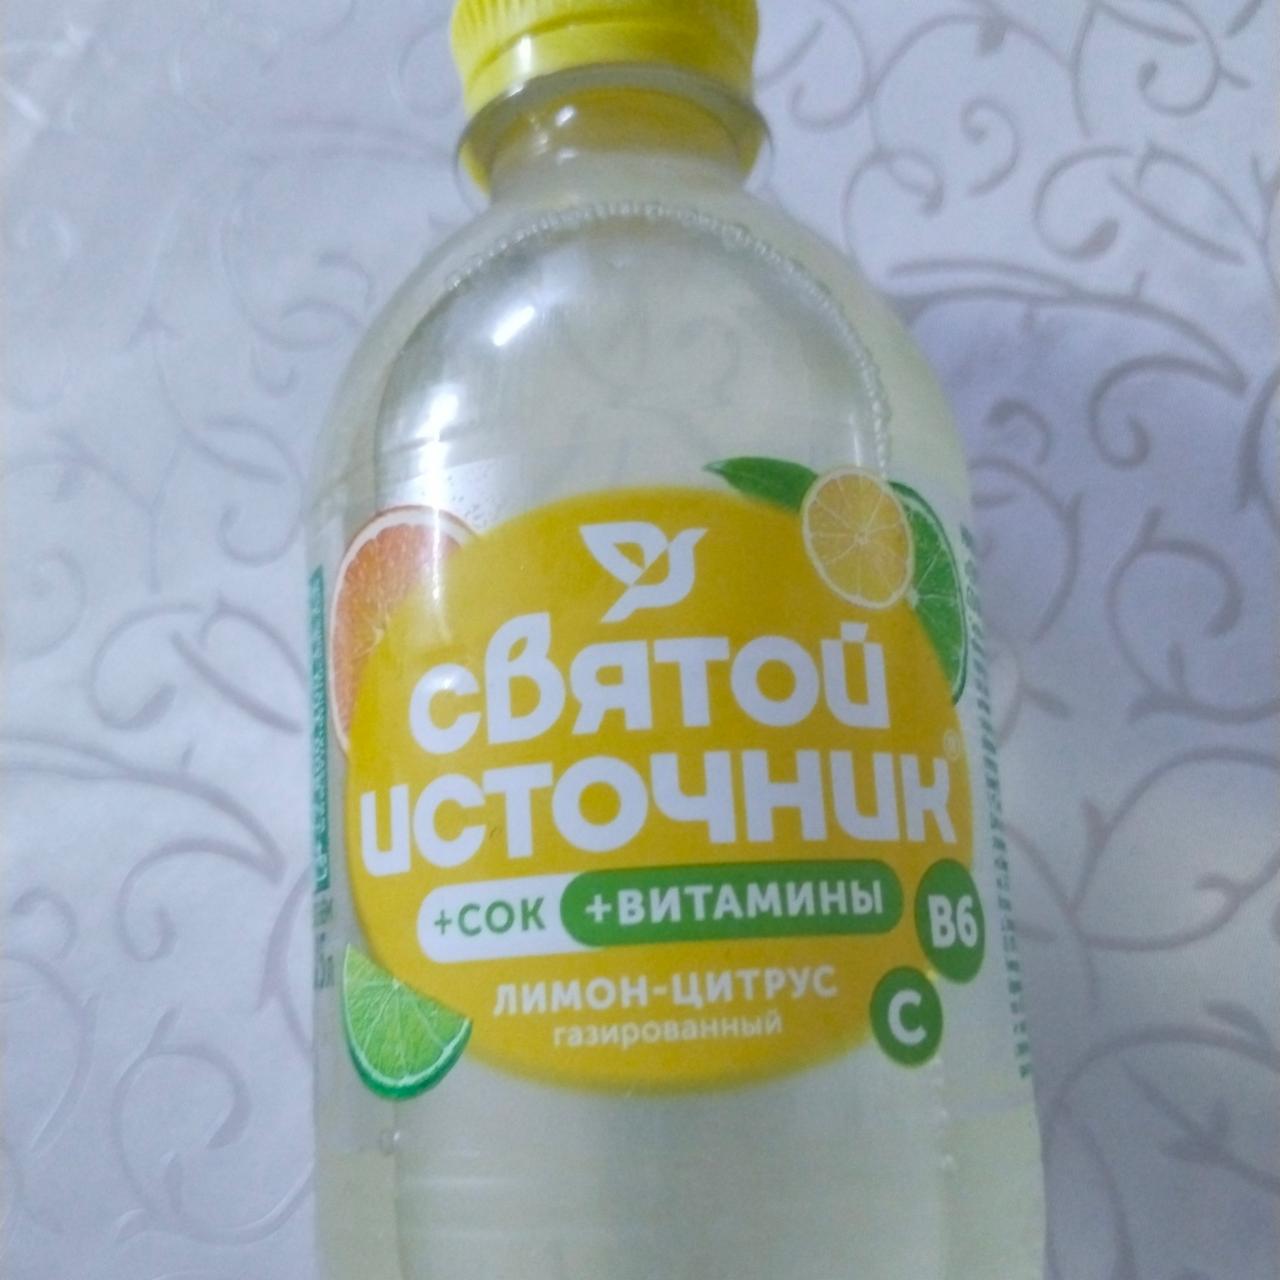 Фото - напиток Лимон - цитрус газированный +сок + витамины Святой источник